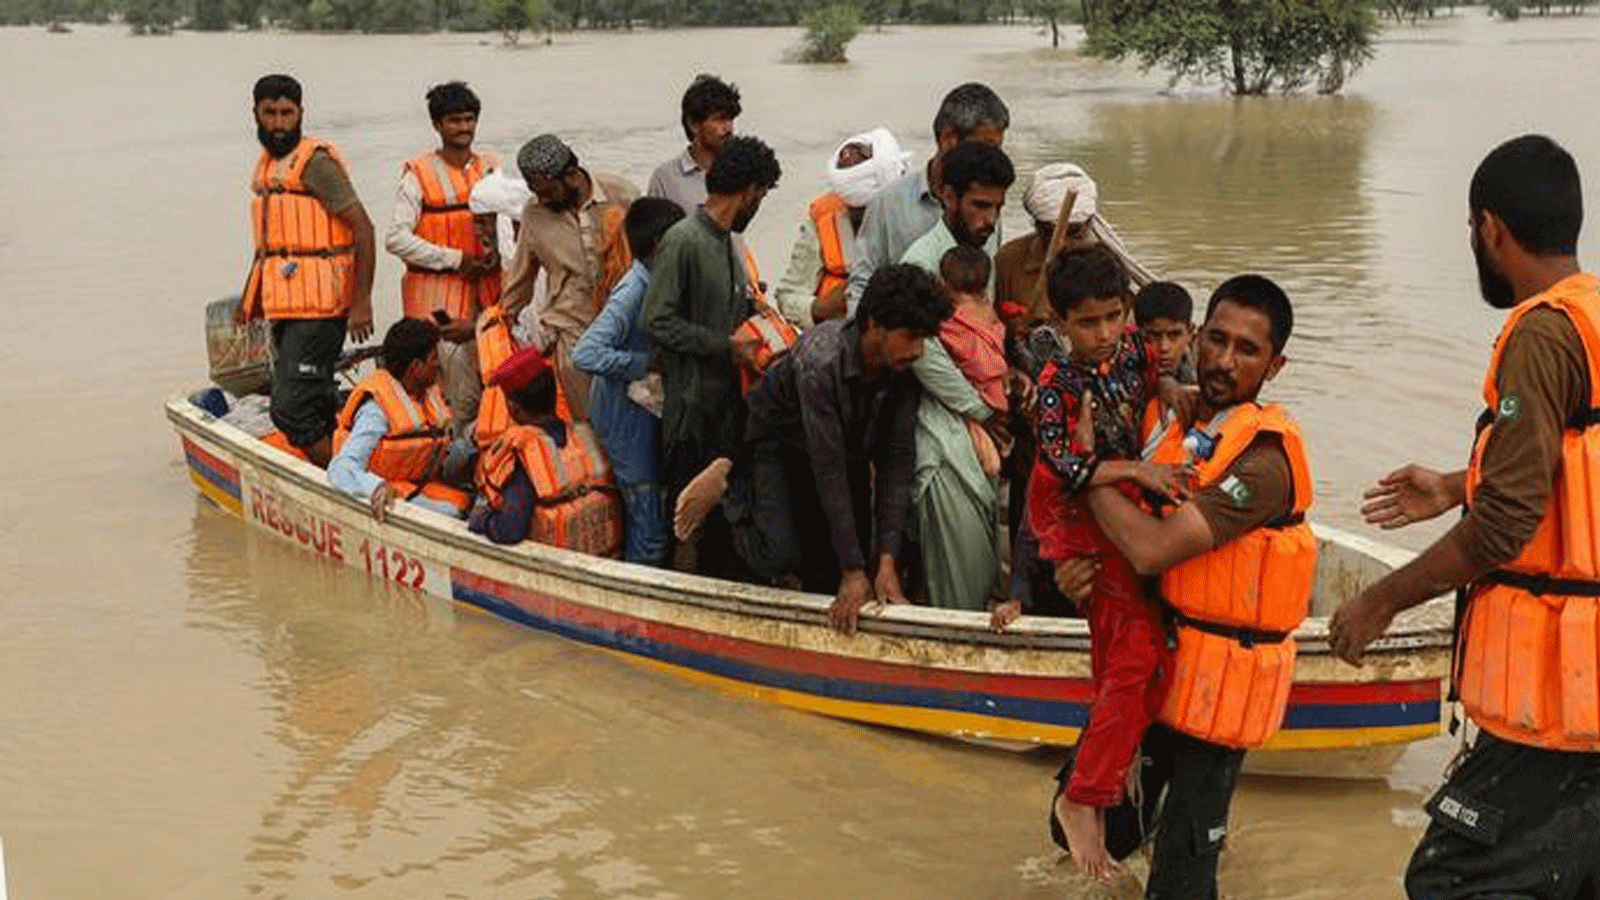 لقطة من عمليات الإنقاذ للسكان بعدما غرقت قراهم بالمياه جراء الفياضانات في باكستان